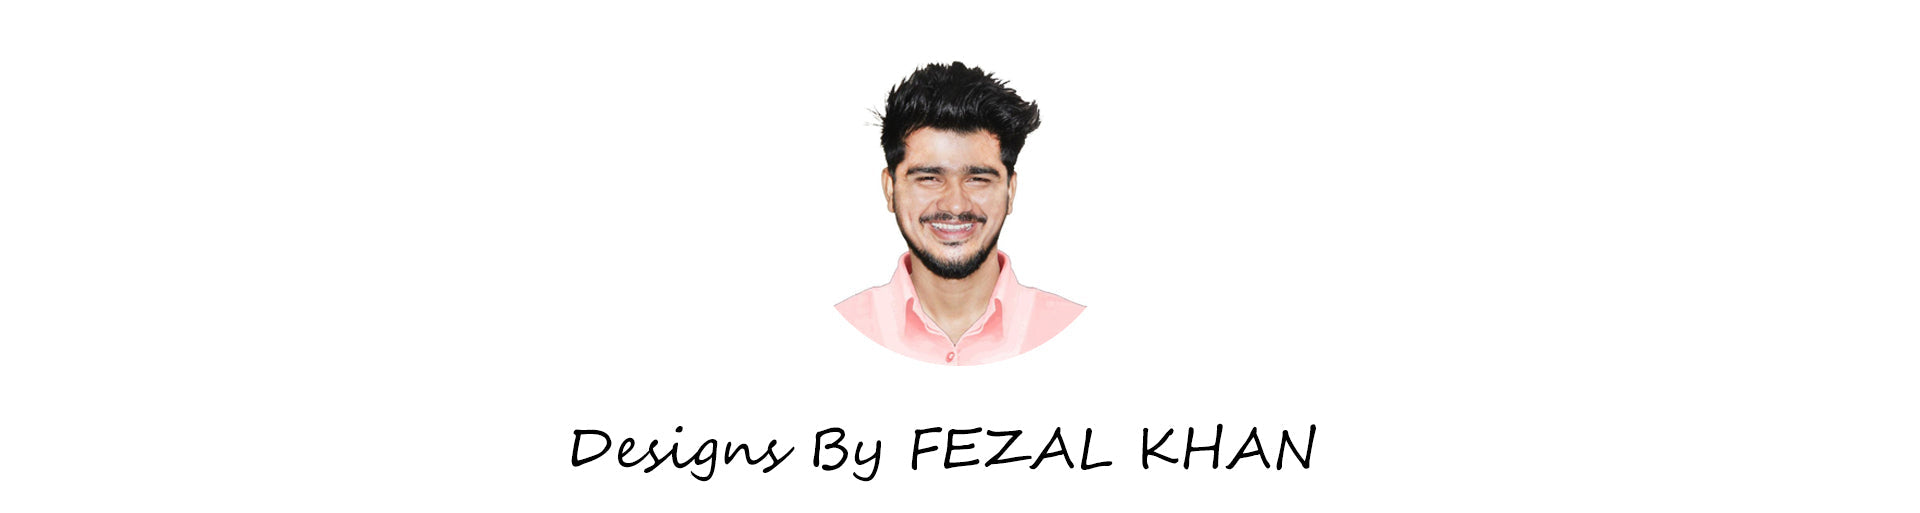 FEZAL KHAN